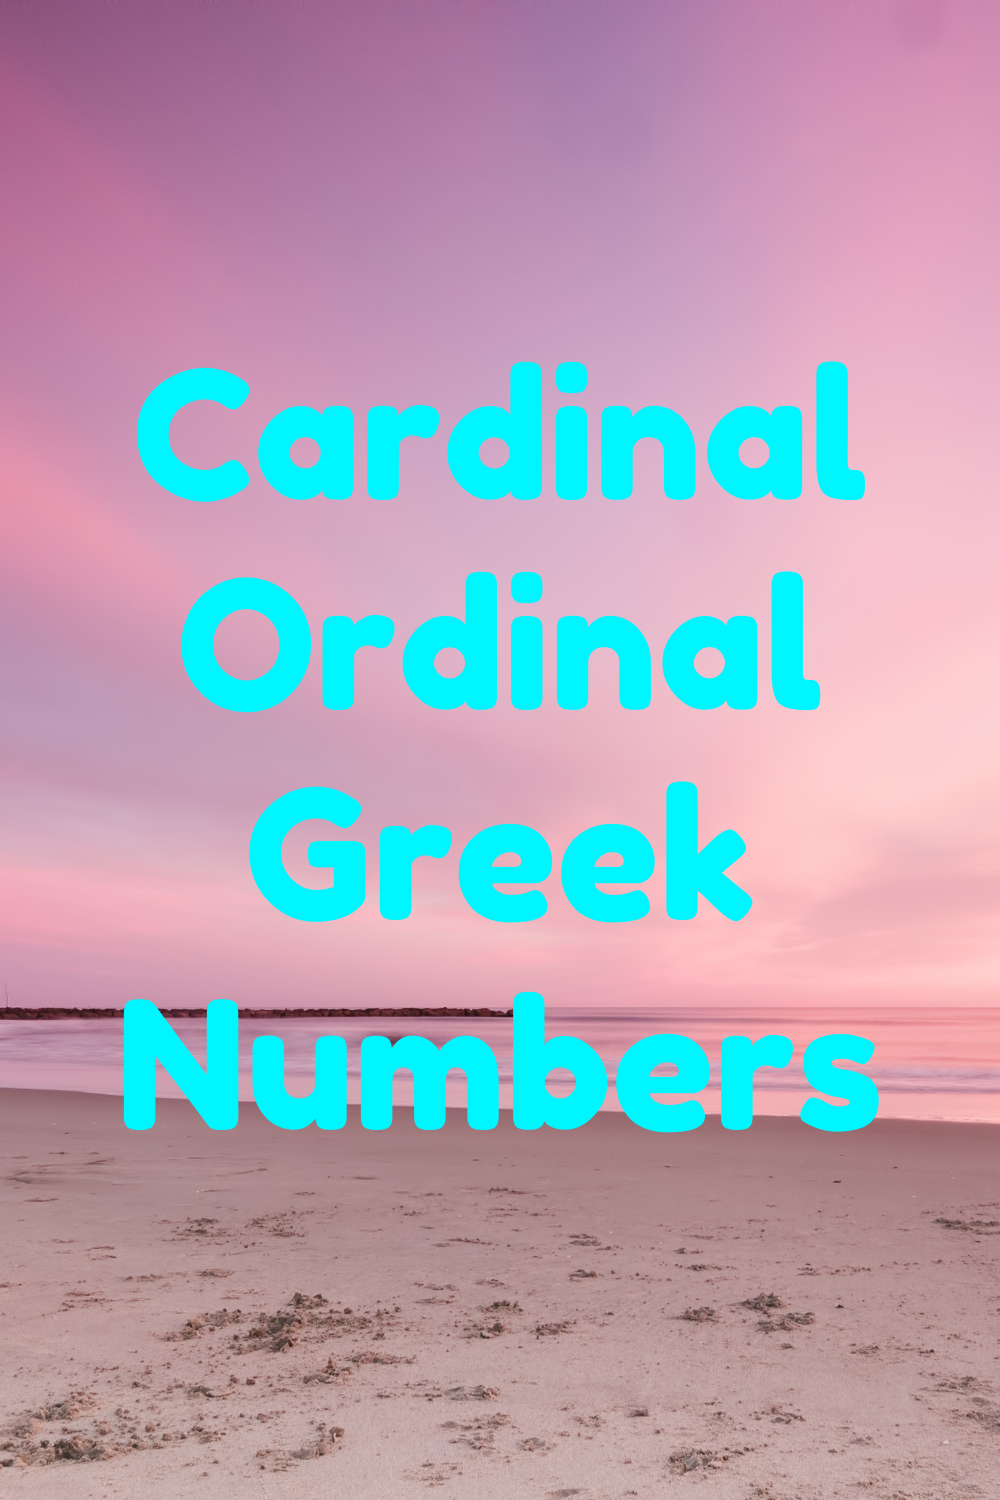 Cardinal and Ordinal Greek Numbers